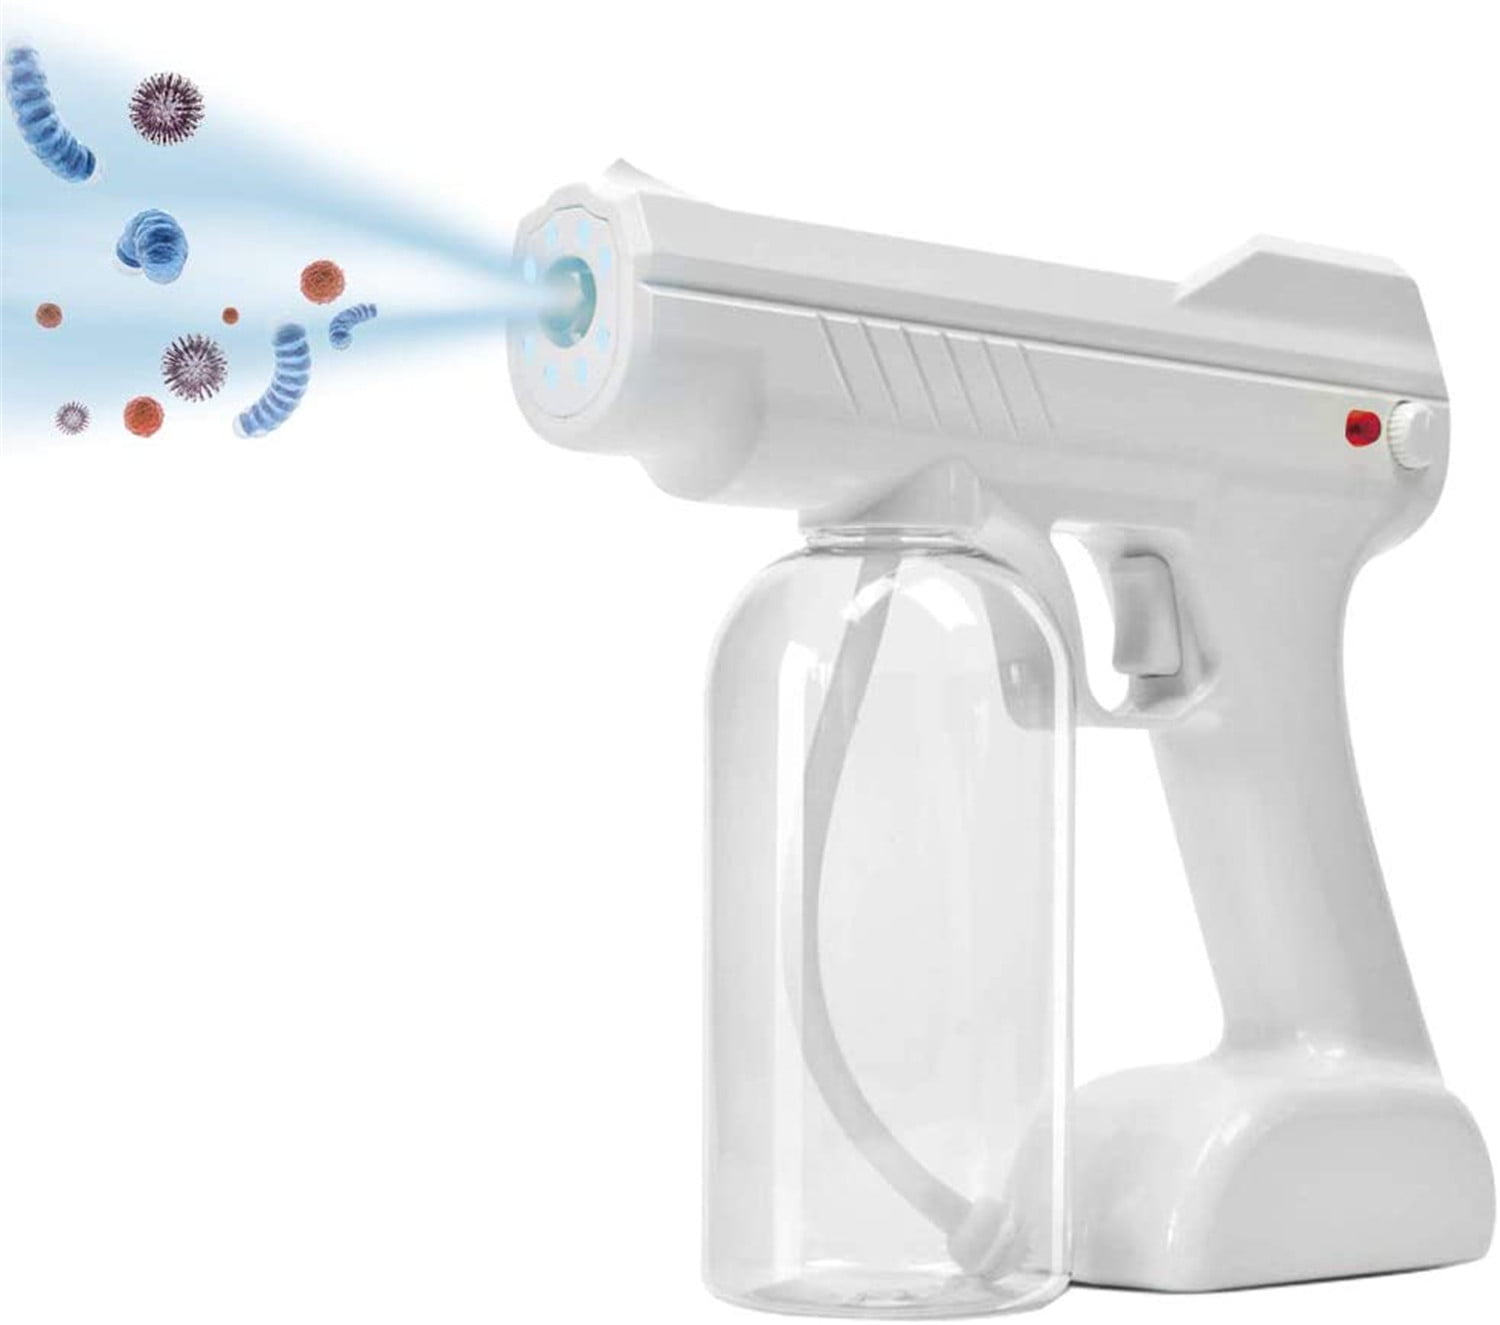 Disinfection spray gun